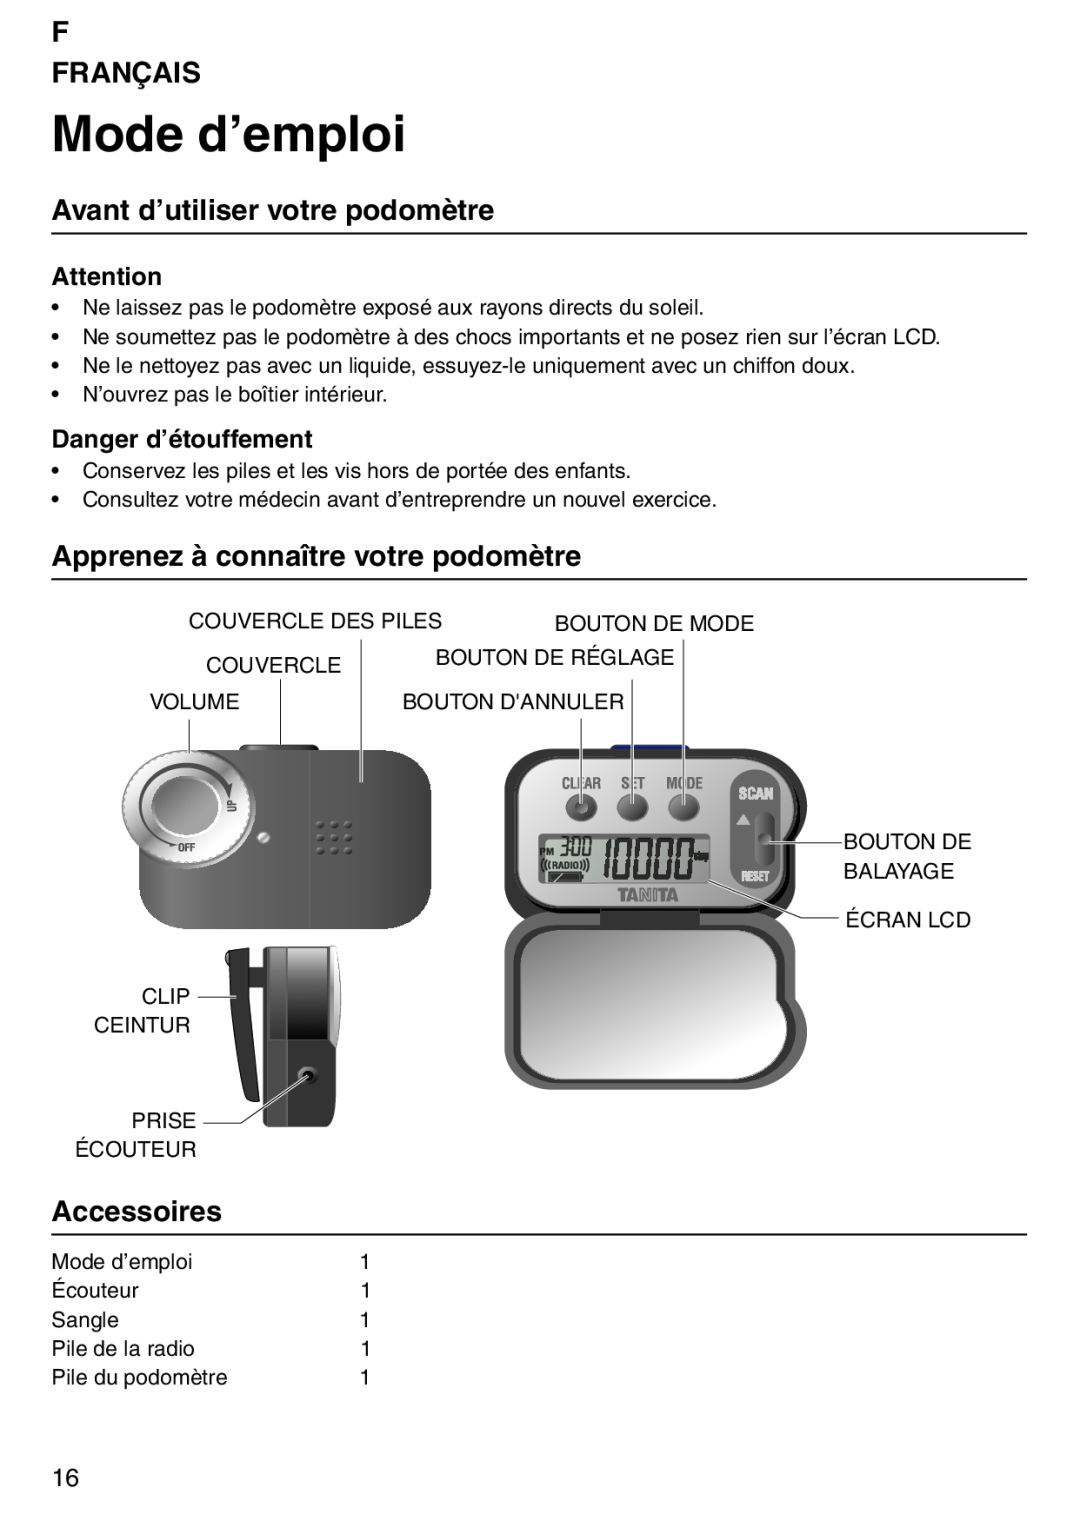 Tanita PD640 Mode d’emploi, F Français, Avant d’utiliser votre podomètre, Apprenez à connaître votre podomètre 